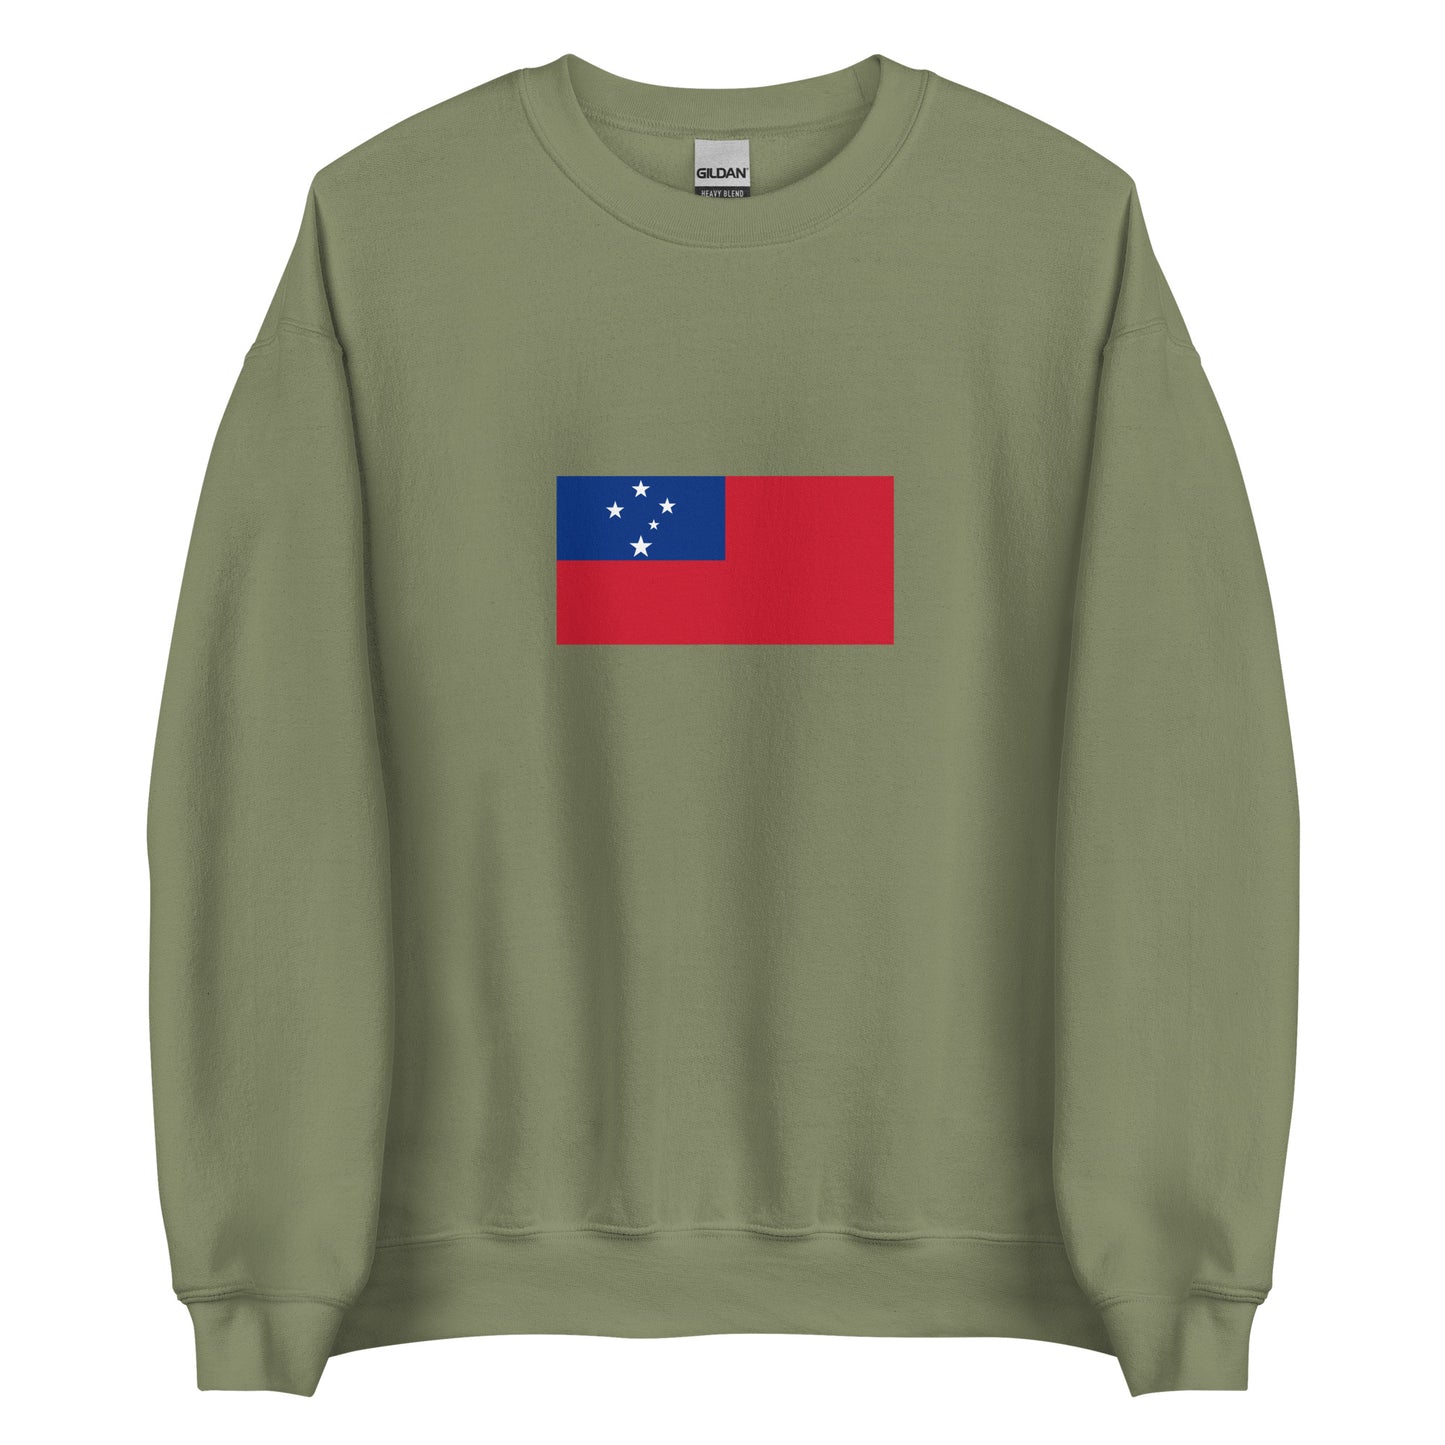 Samoan people | Indigenous New Zealand Flag Interactive Sweatshirt